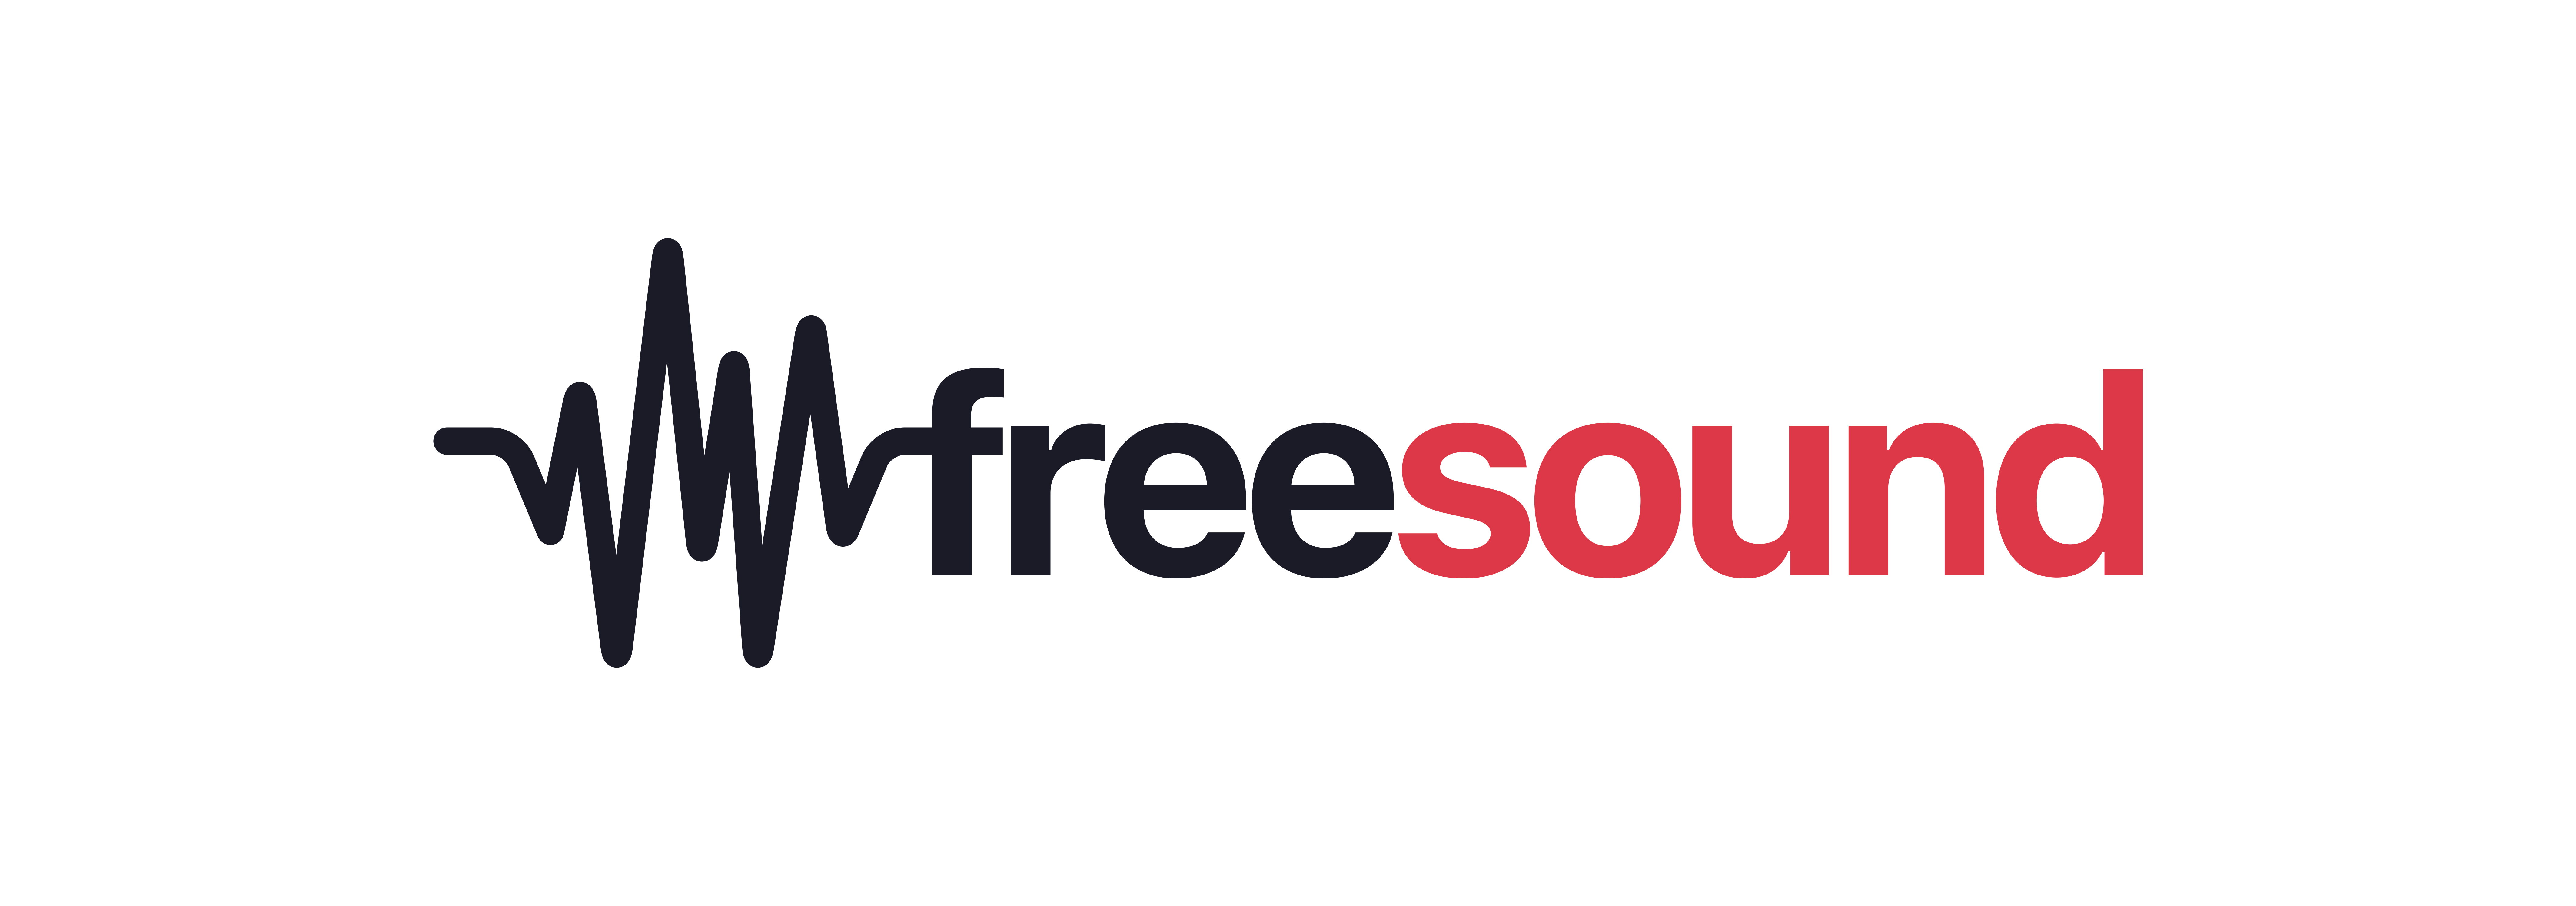 Freesound.org logo